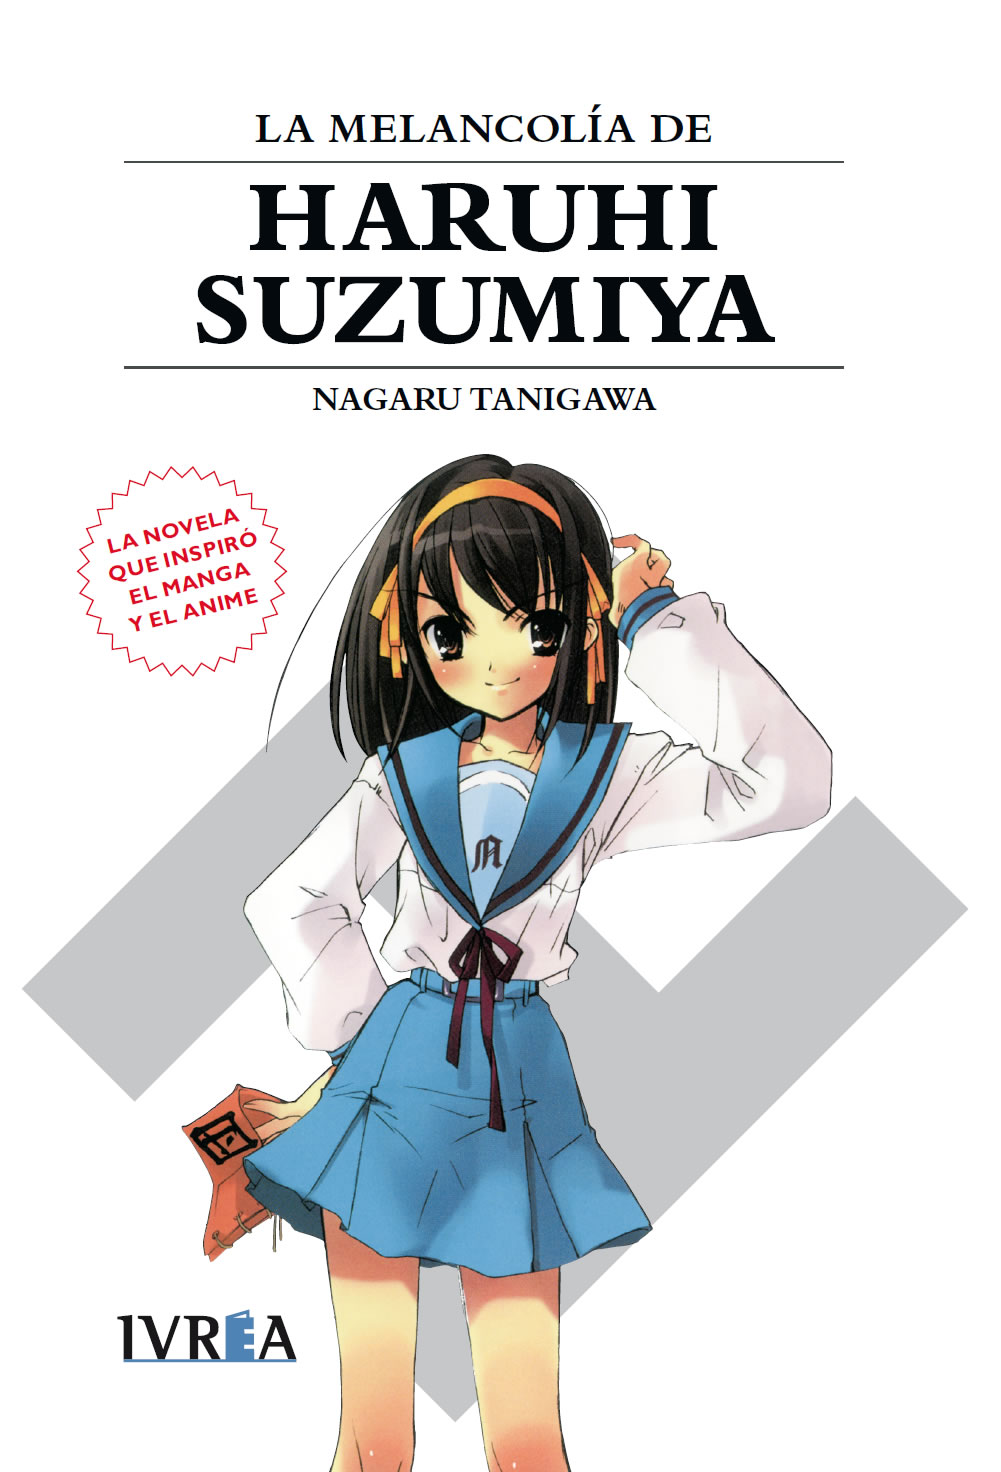 Lo que necesitas saber sobre las novelas ligeras de Haruhi Suzumiya. ✅ De qué tratan, y el orden de lectura recomendado. Cómpralas en nuestra tienda online.